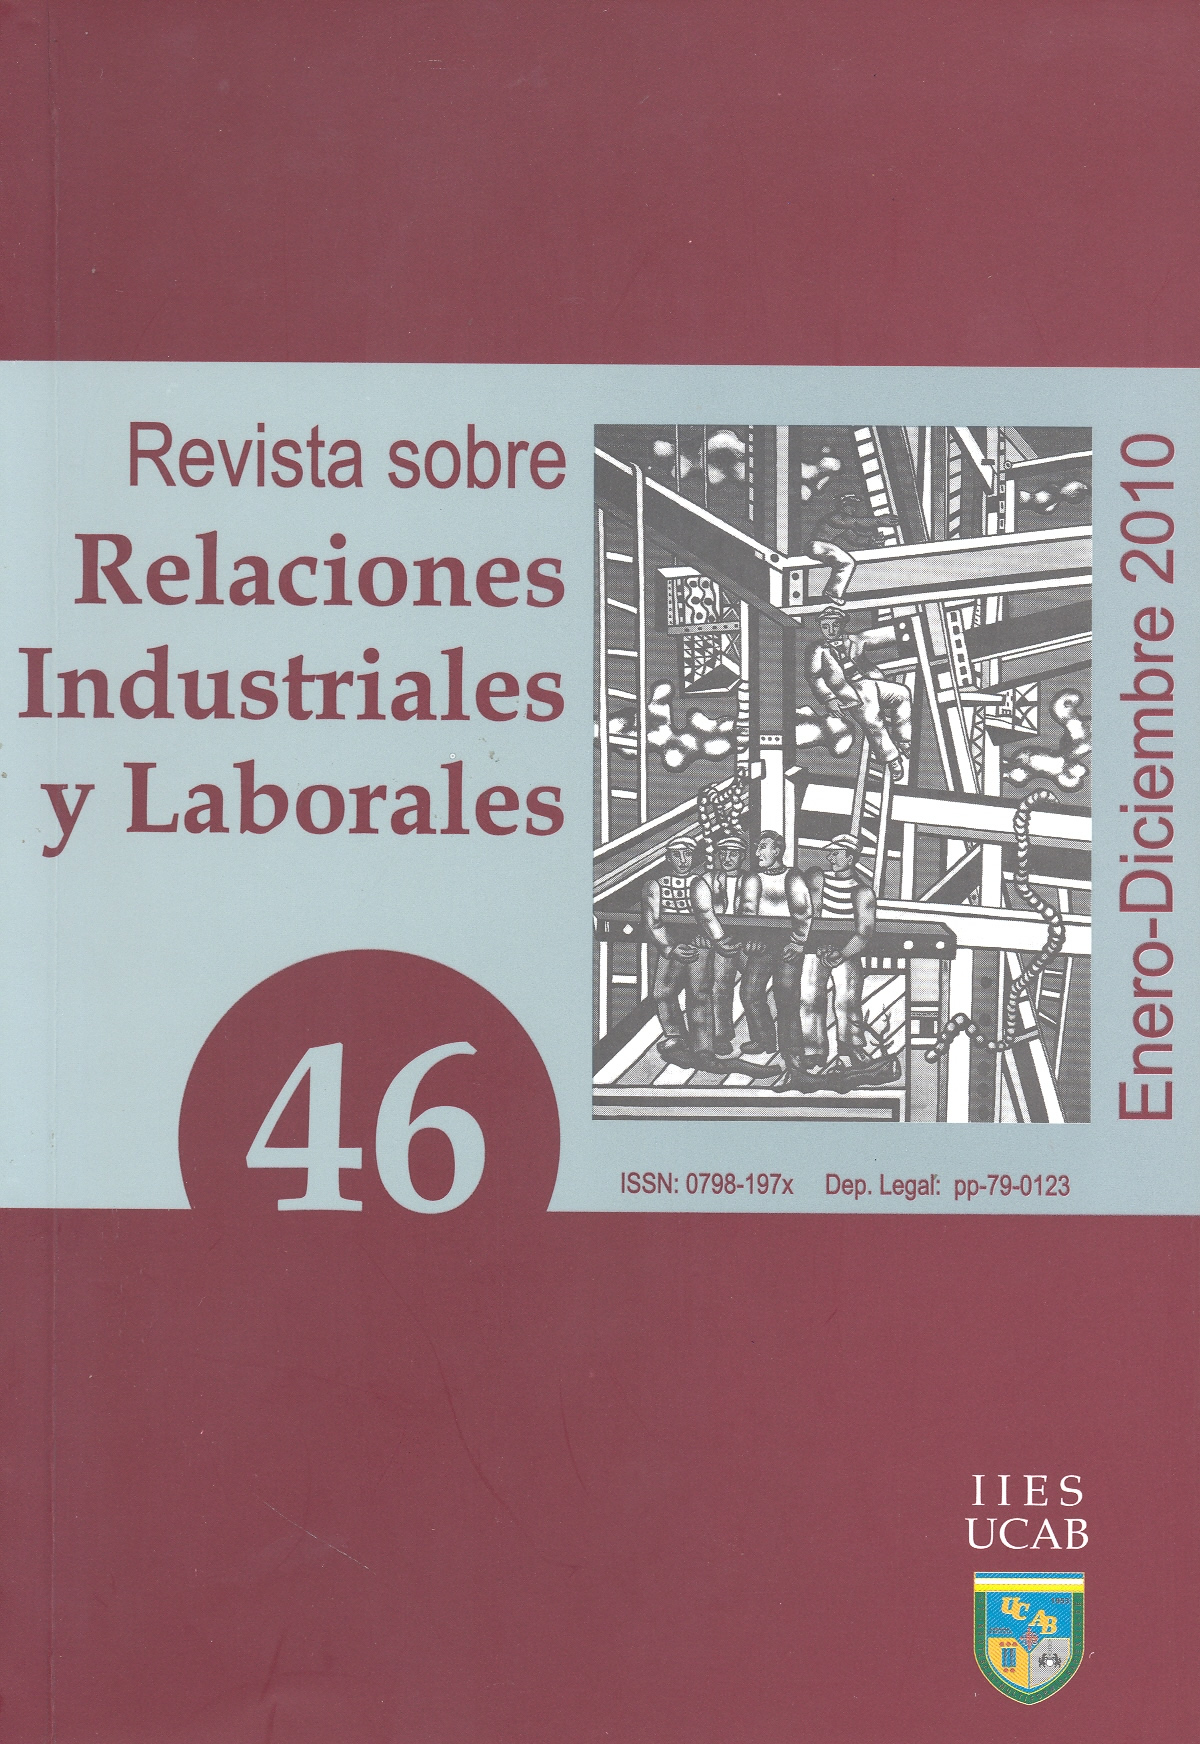 					Ver Núm. 46 (2010): Revista sobre Relaciones Industriales y Laborales
				